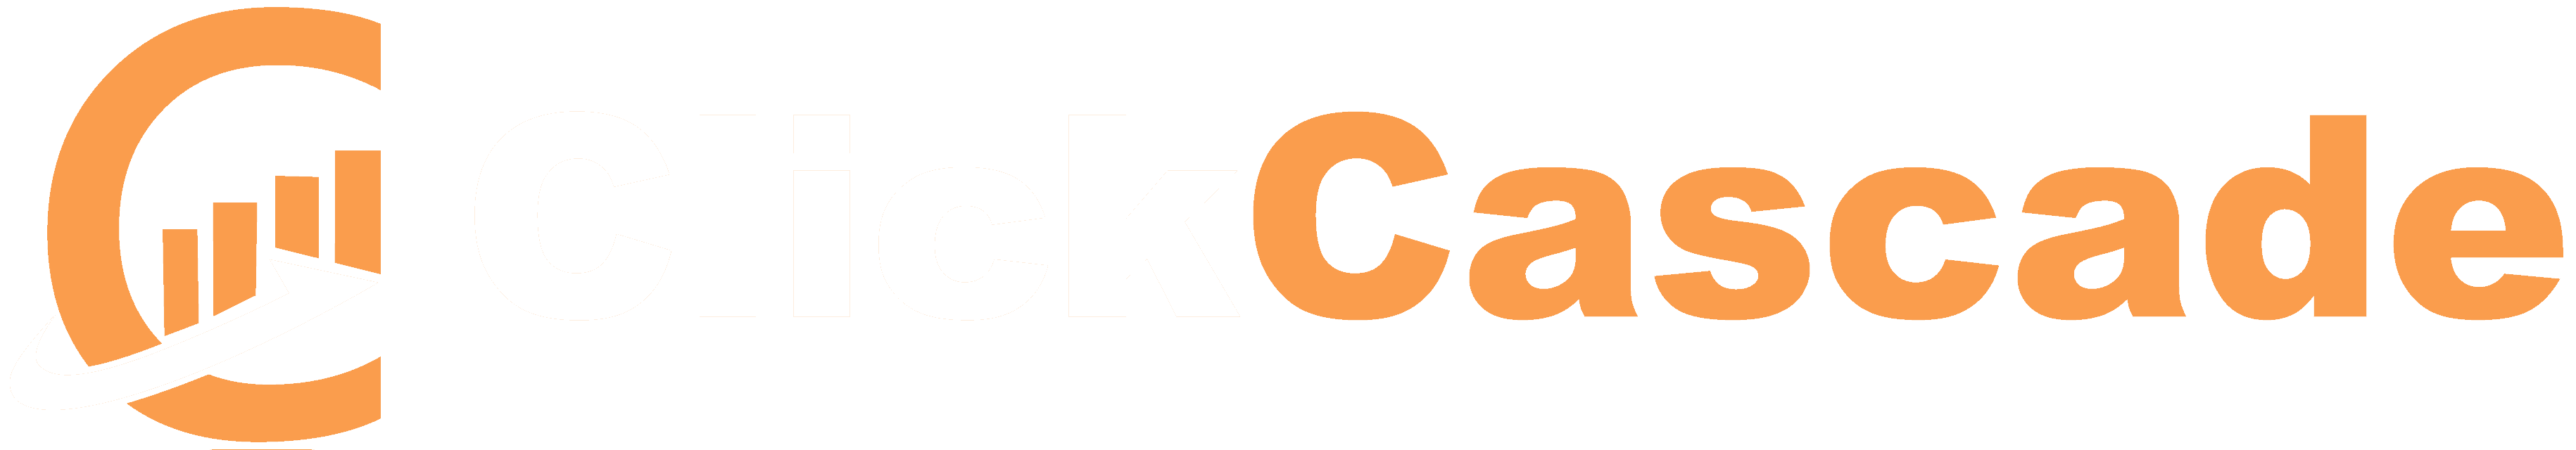 ClickCascade Logo